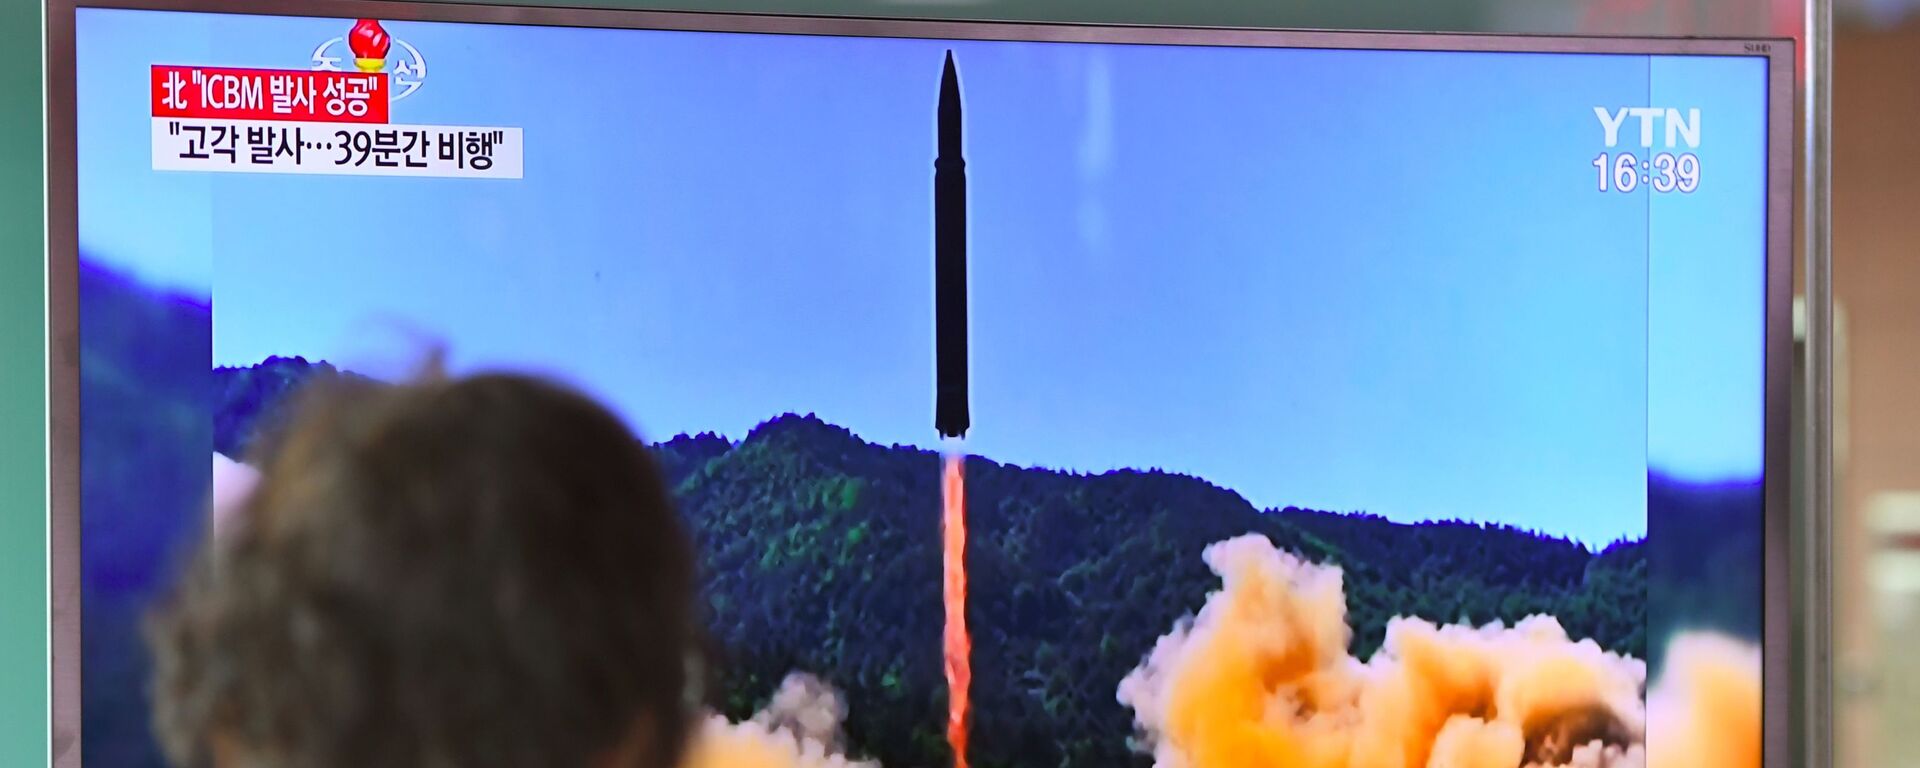 کره شمالی خبر از آزمایش موفقیت آمیز سیستم موشکی هایپرسونیک داد - اسپوتنیک ایران  , 1920, 29.09.2021